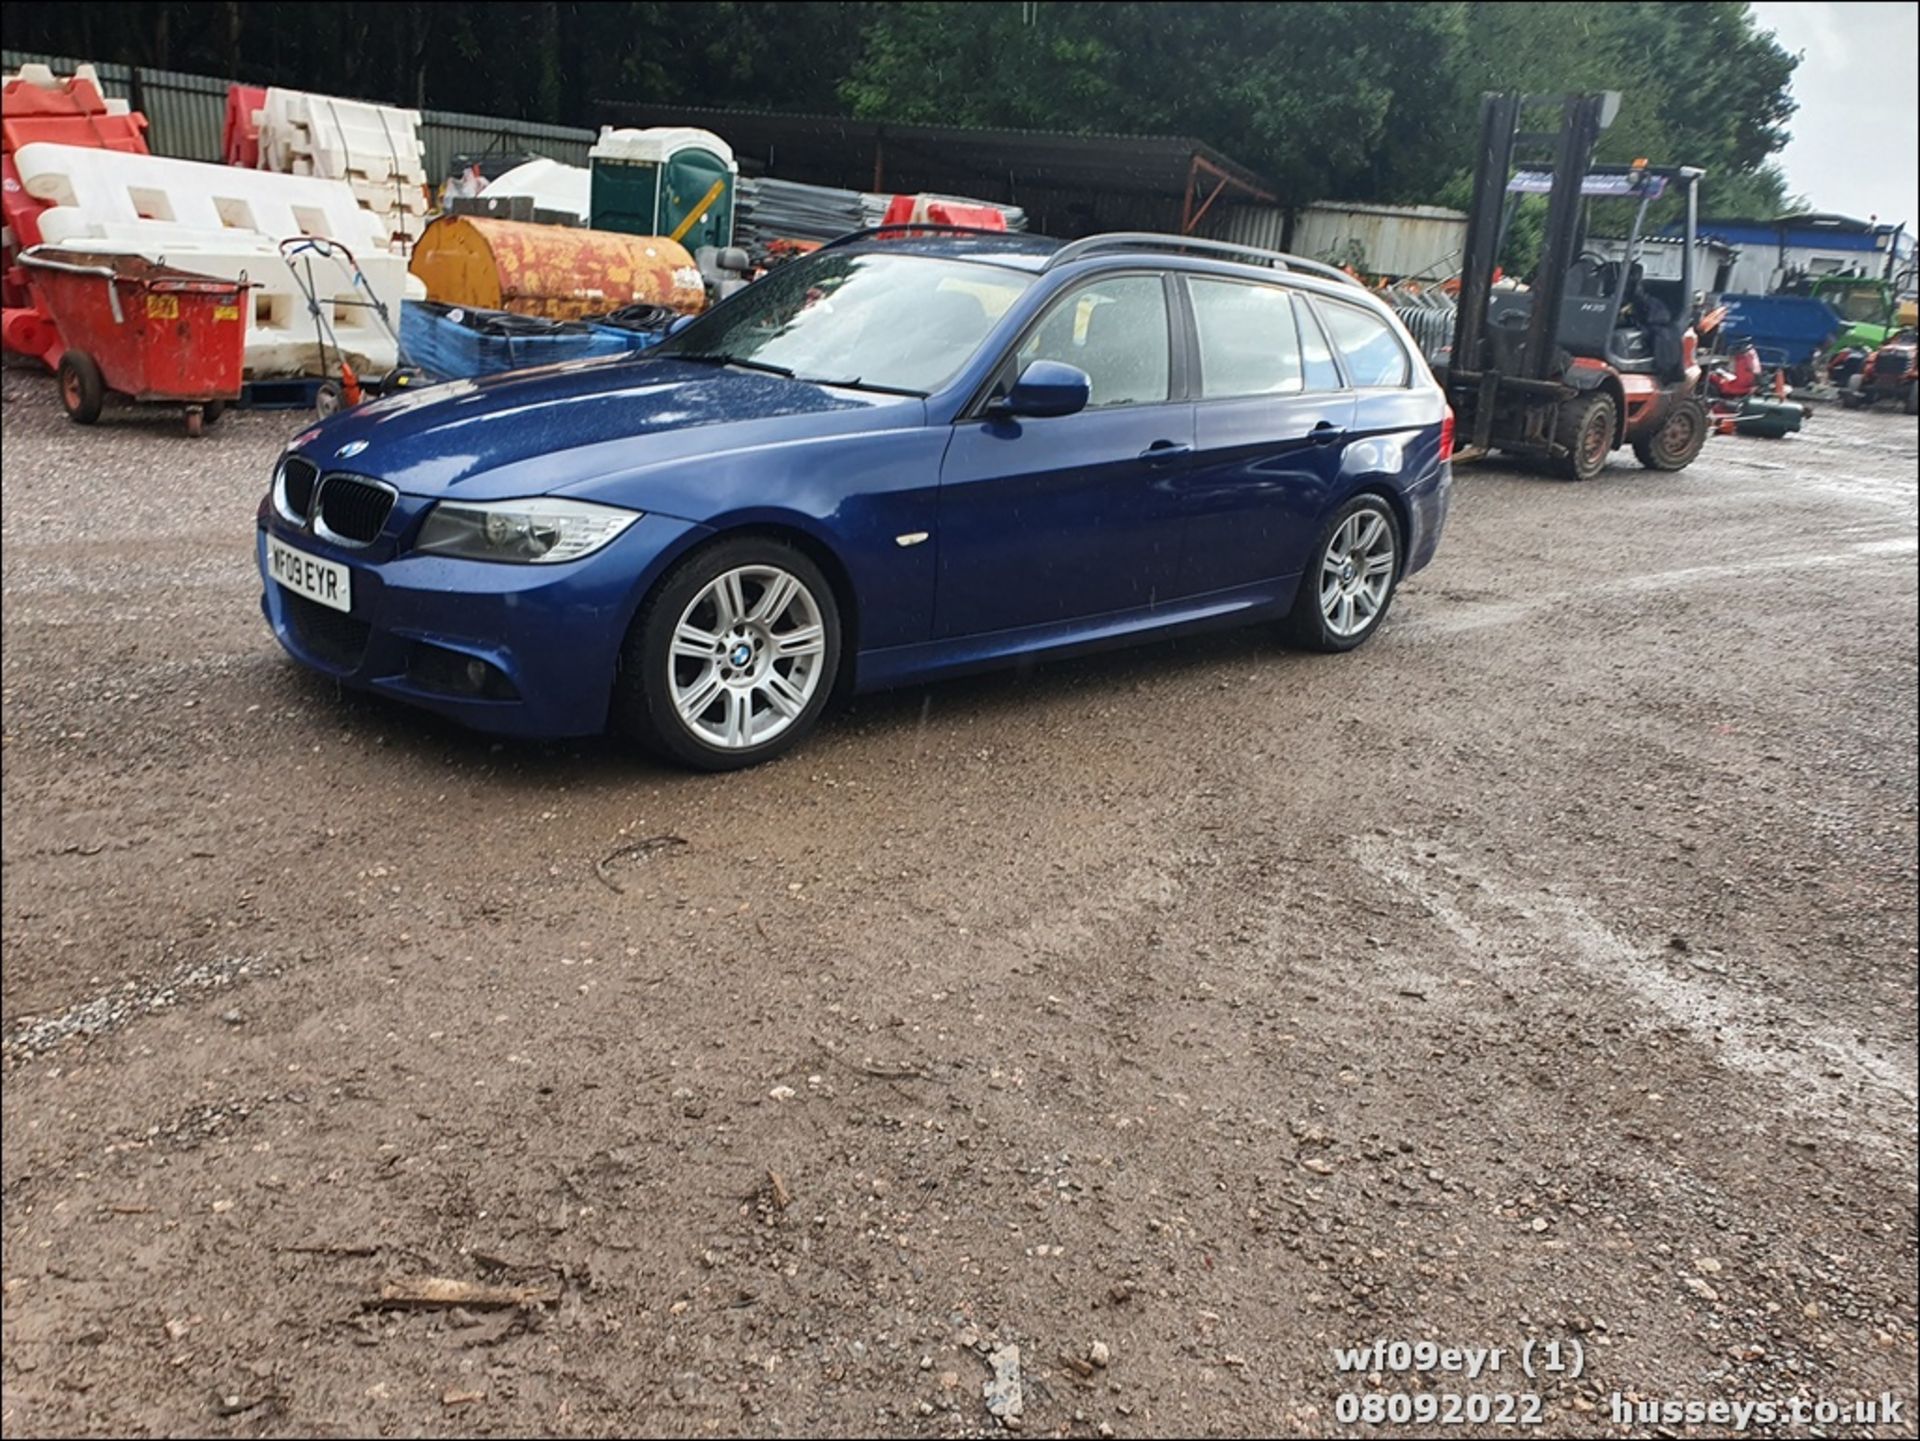 09/09 BMW 318I M SPORT TOURING - 1995cc 5dr Estate (Blue, 122k) - Image 2 of 47